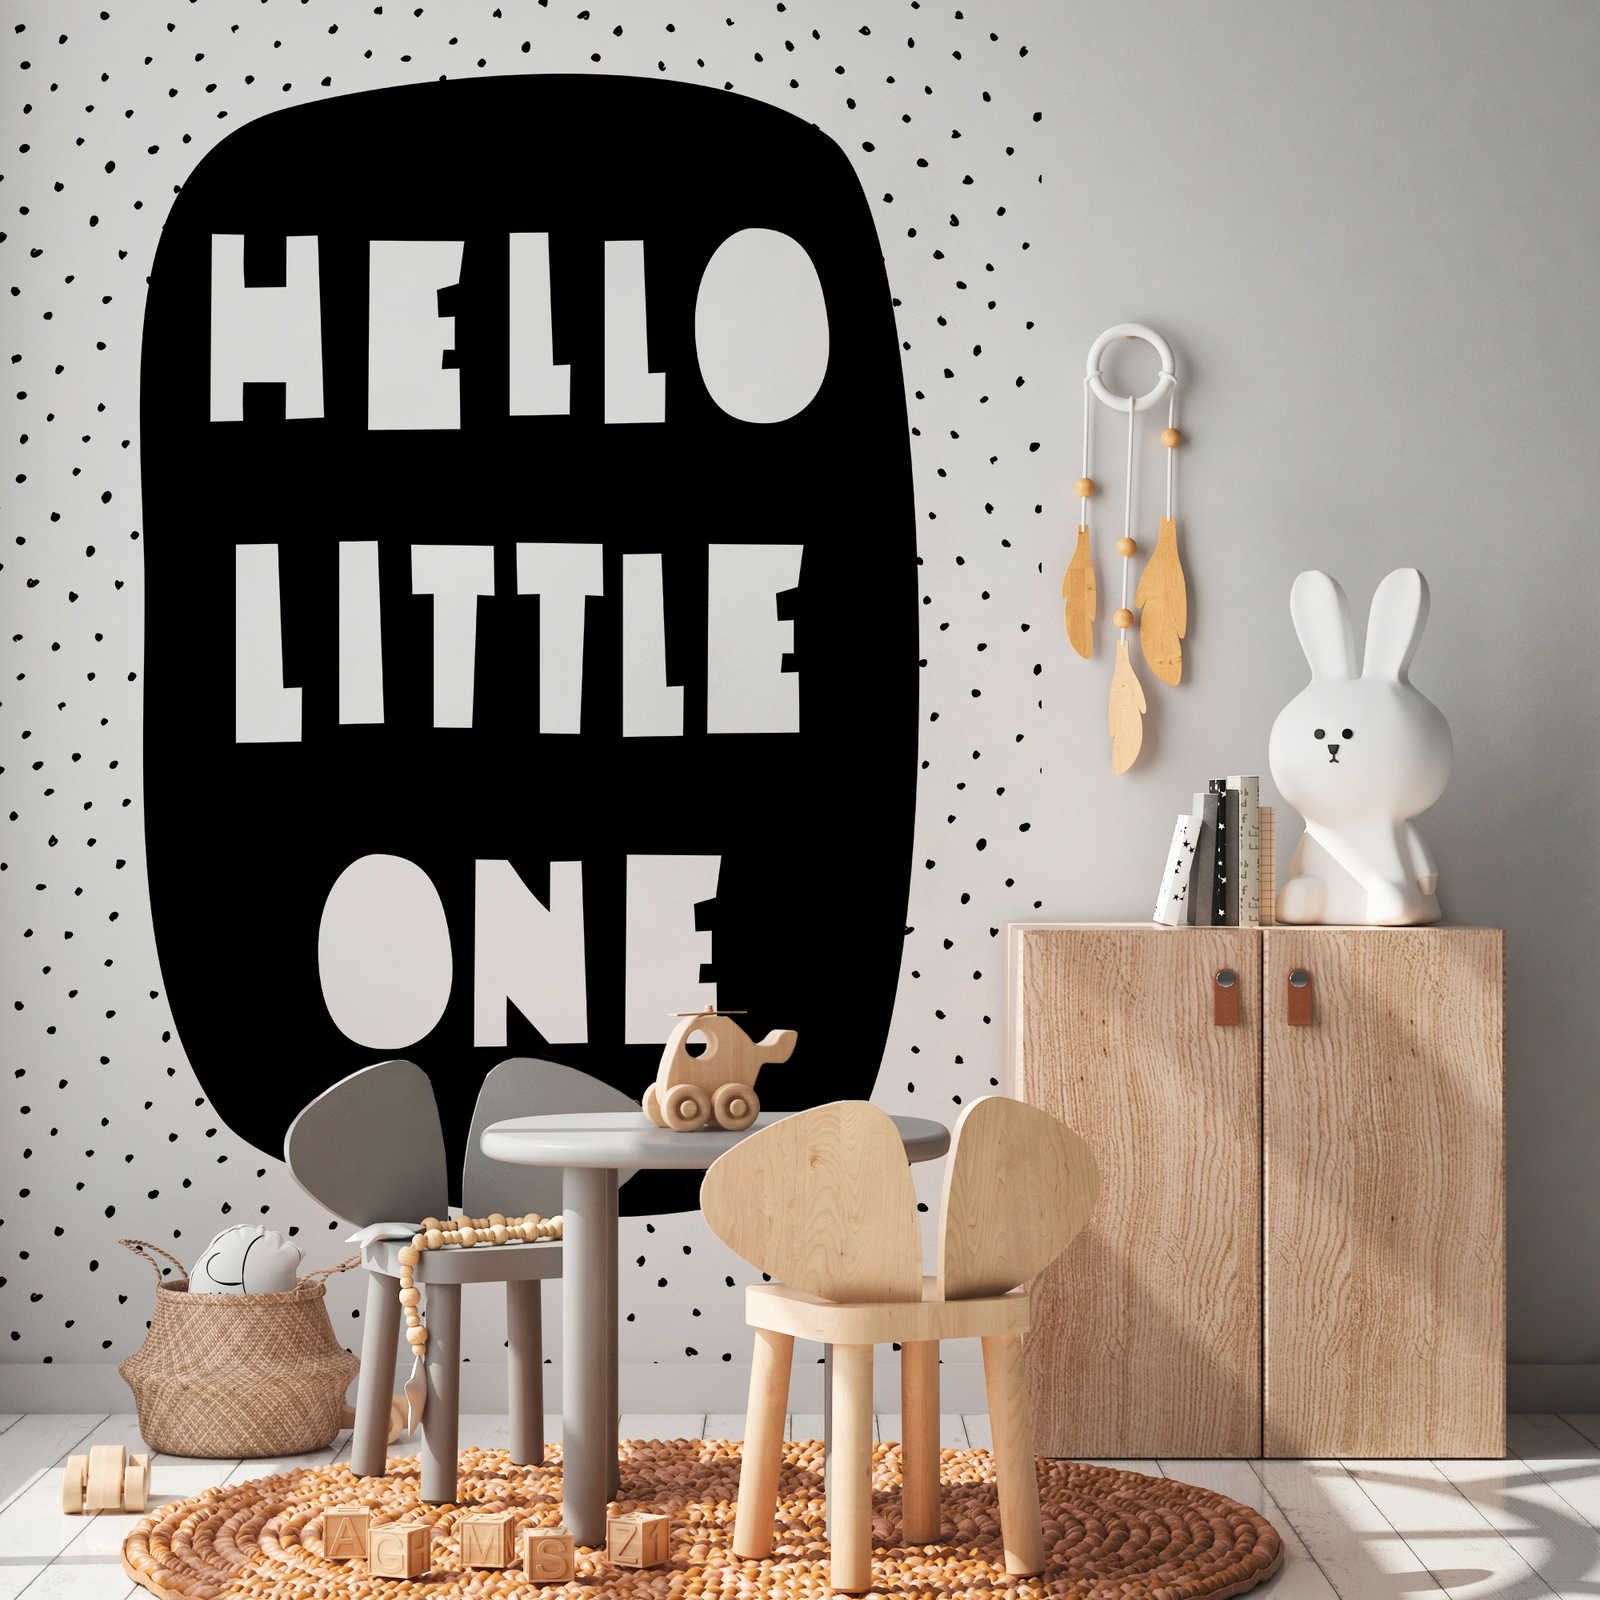 Fotomurali per la camera dei bambini con la scritta "Hello Little One" - Materiali non tessuto liscio e opaco
